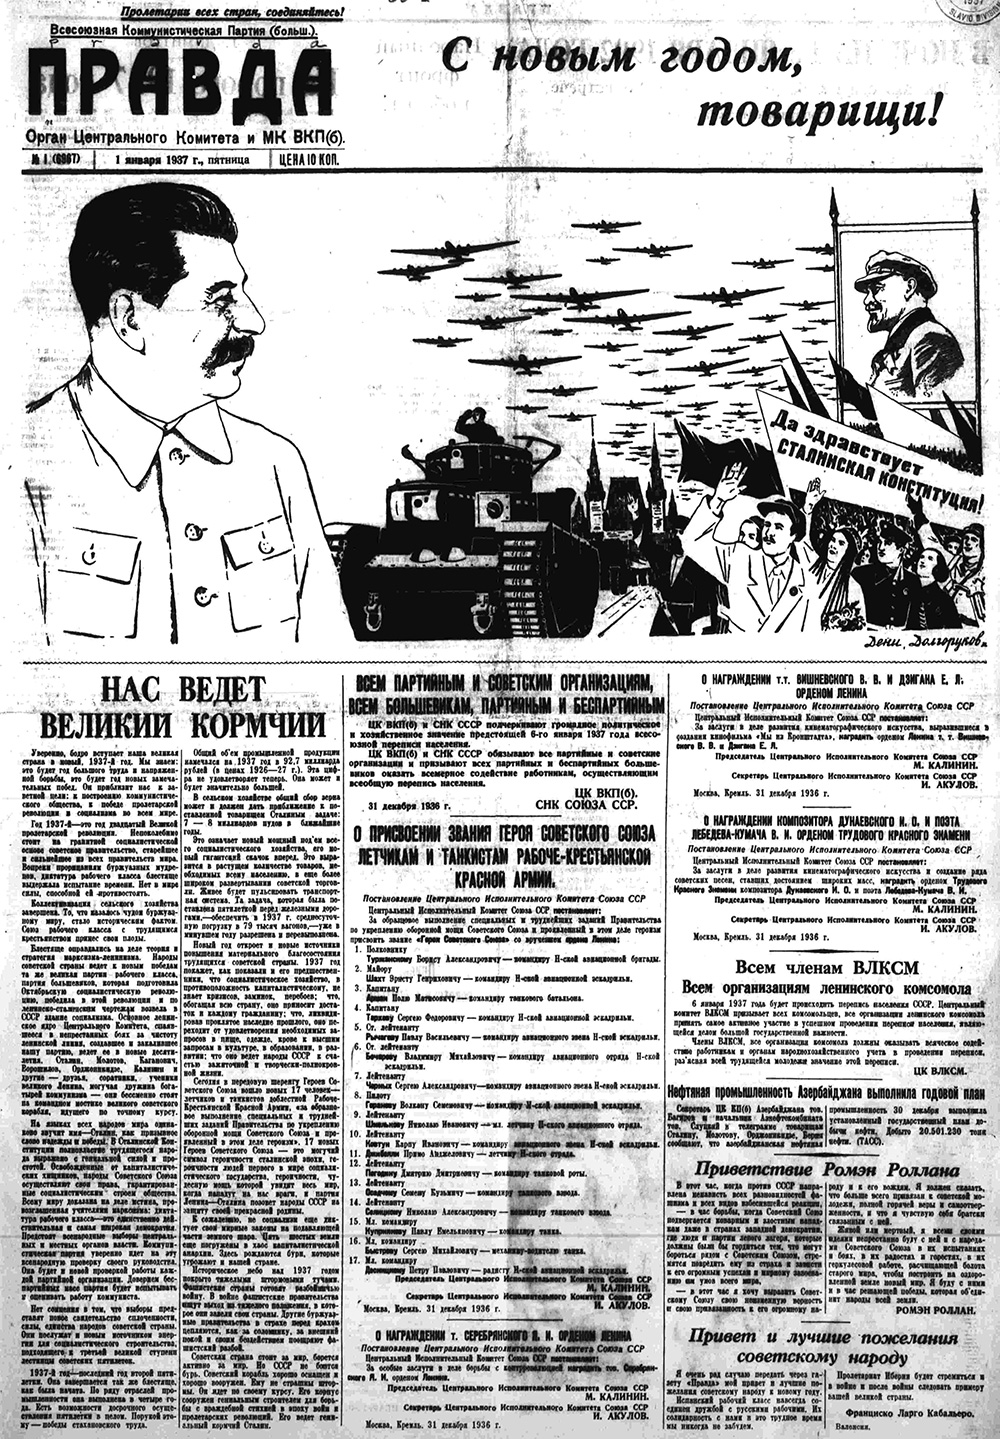 Доклад: Социально-психологическое содержание газеты Правда в СССР